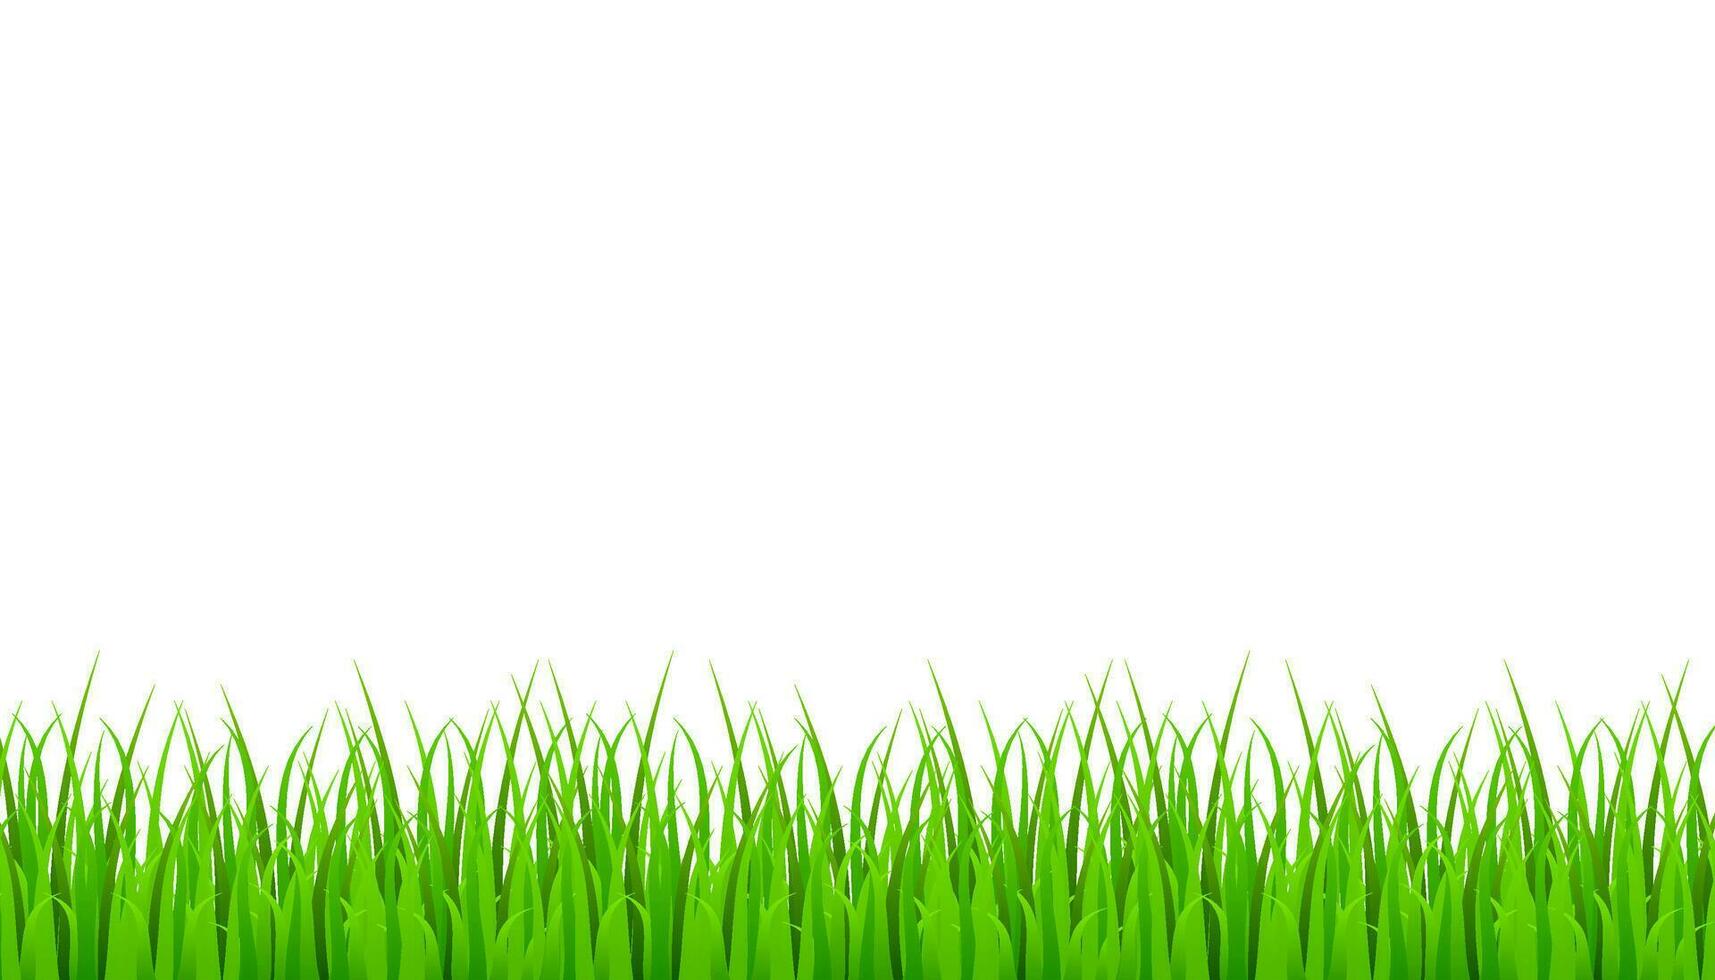 groen gras weide grens vector patroon. gras achtergrond vector voorraad illustratie